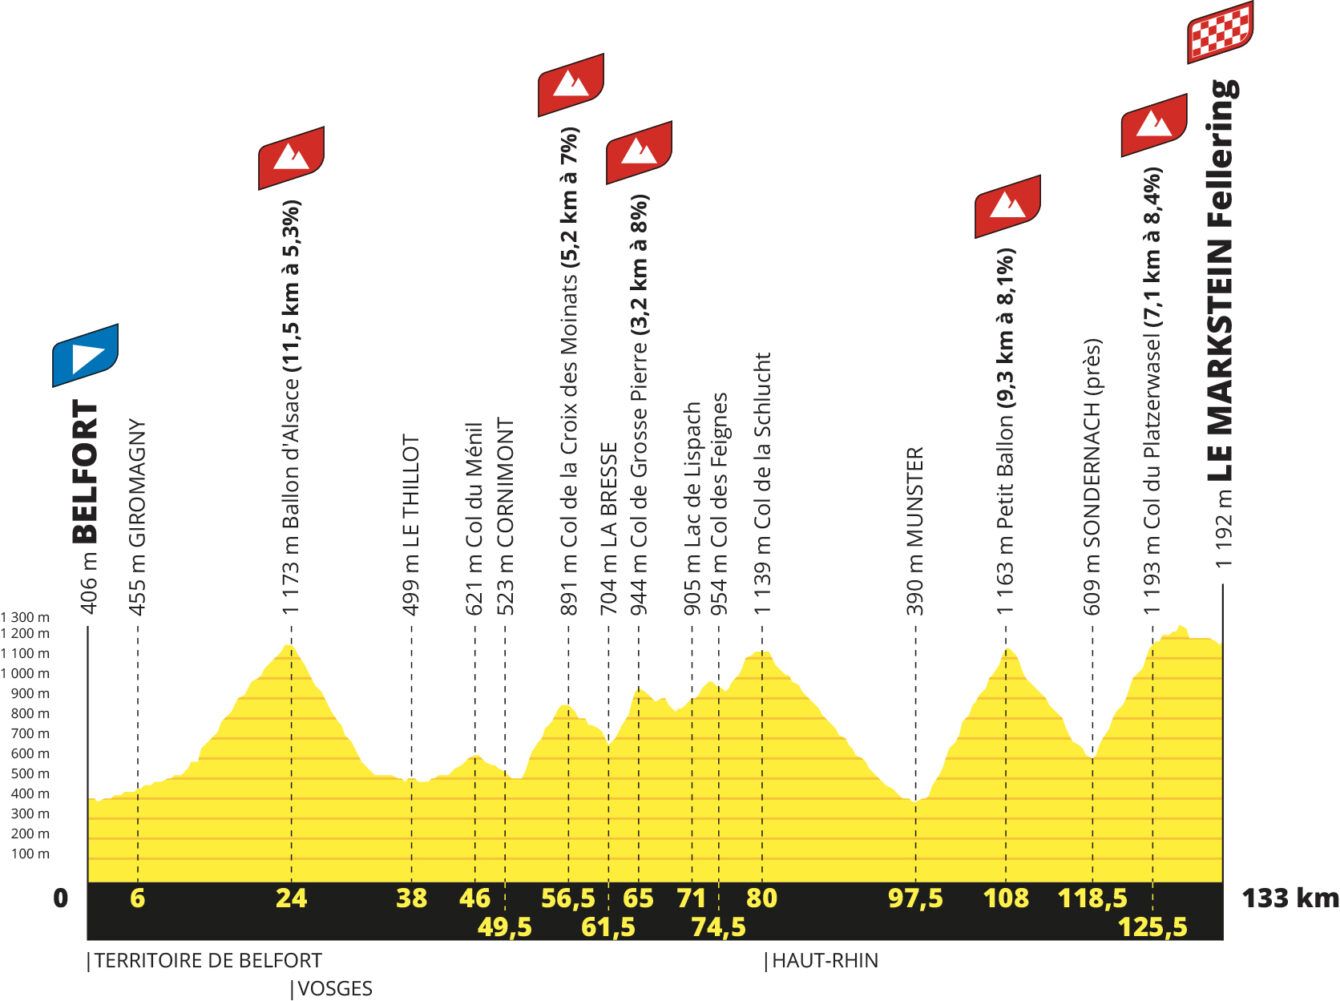 Αναλυτική παρουσίαση Tour de France 2023